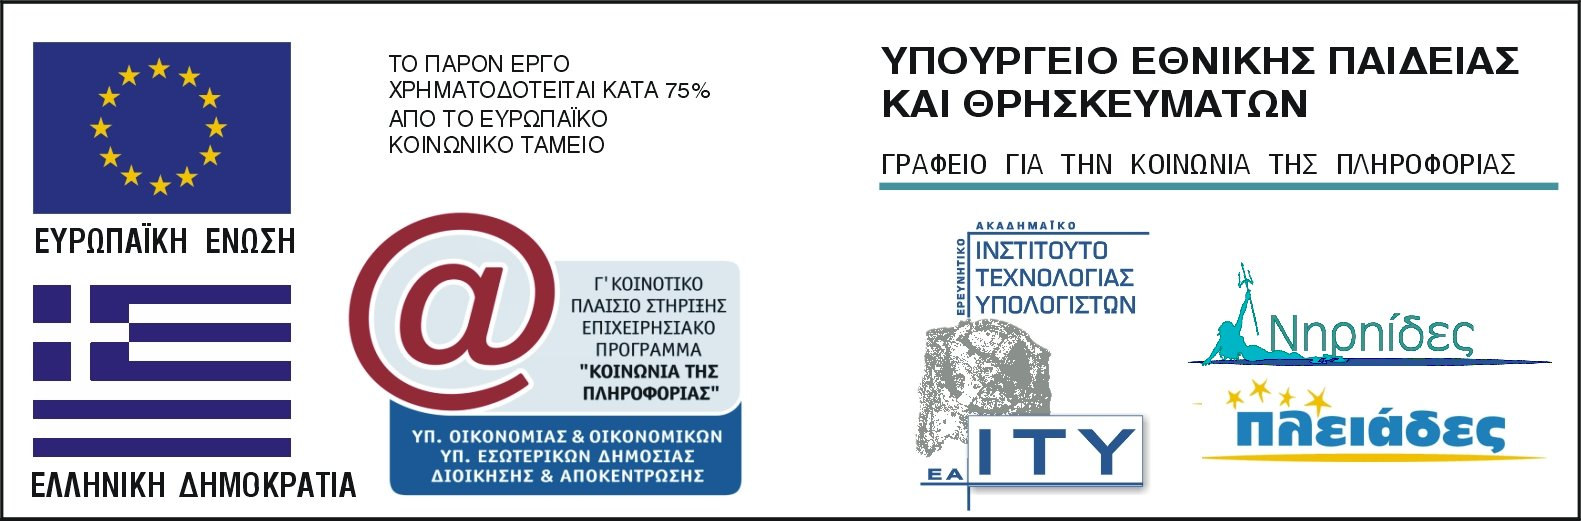 Το παρόν εκπαιδευτικό υλικό αναπτύχθηκε στο παρακάτω πλαίσιο: Πράξη: ΠΛΕΙΑ ΕΣ: Ανάπτυξη Εκπαιδευτικού Λογισµικού και Ολοκληρωµένων Εκπαιδευτικών Πακέτων για τα Ελληνικά Σχολεία της Πρωτοβάθµιας και